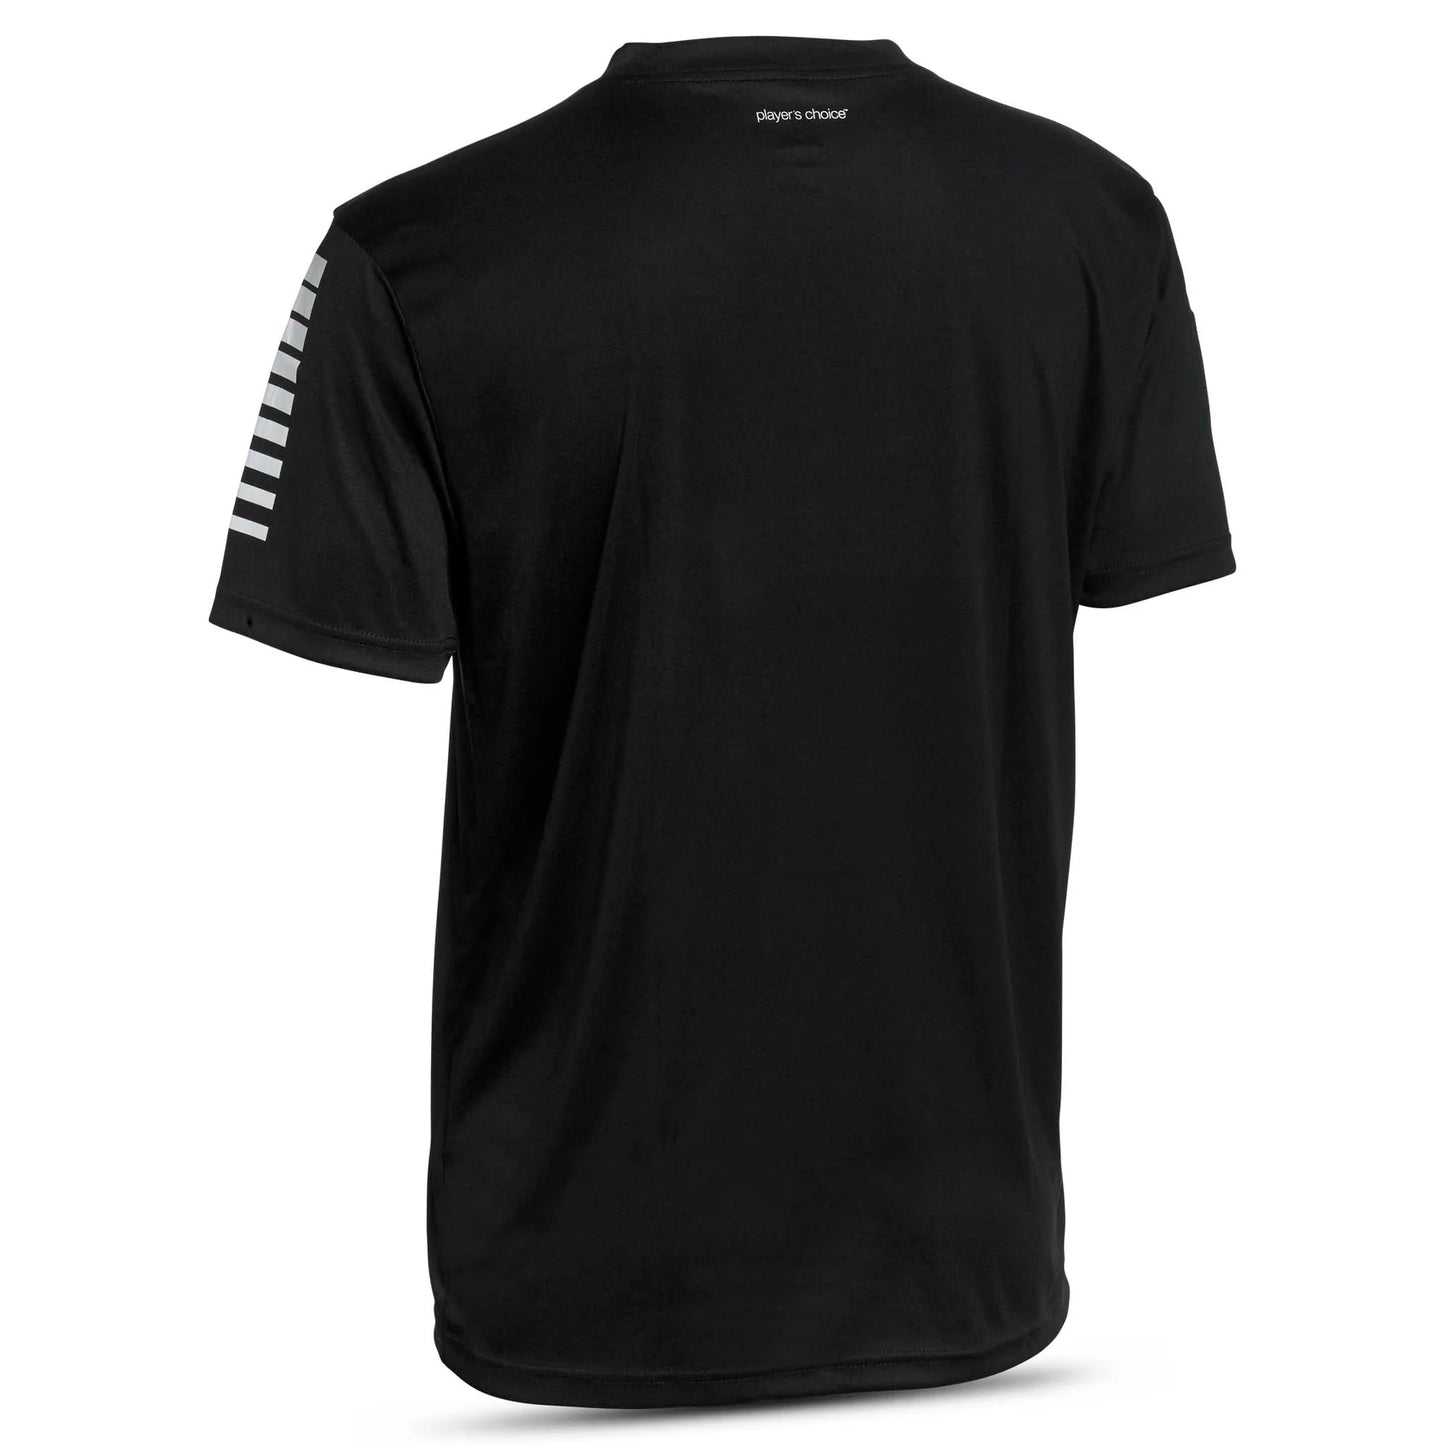 Player shirt S/S Pisa black barn